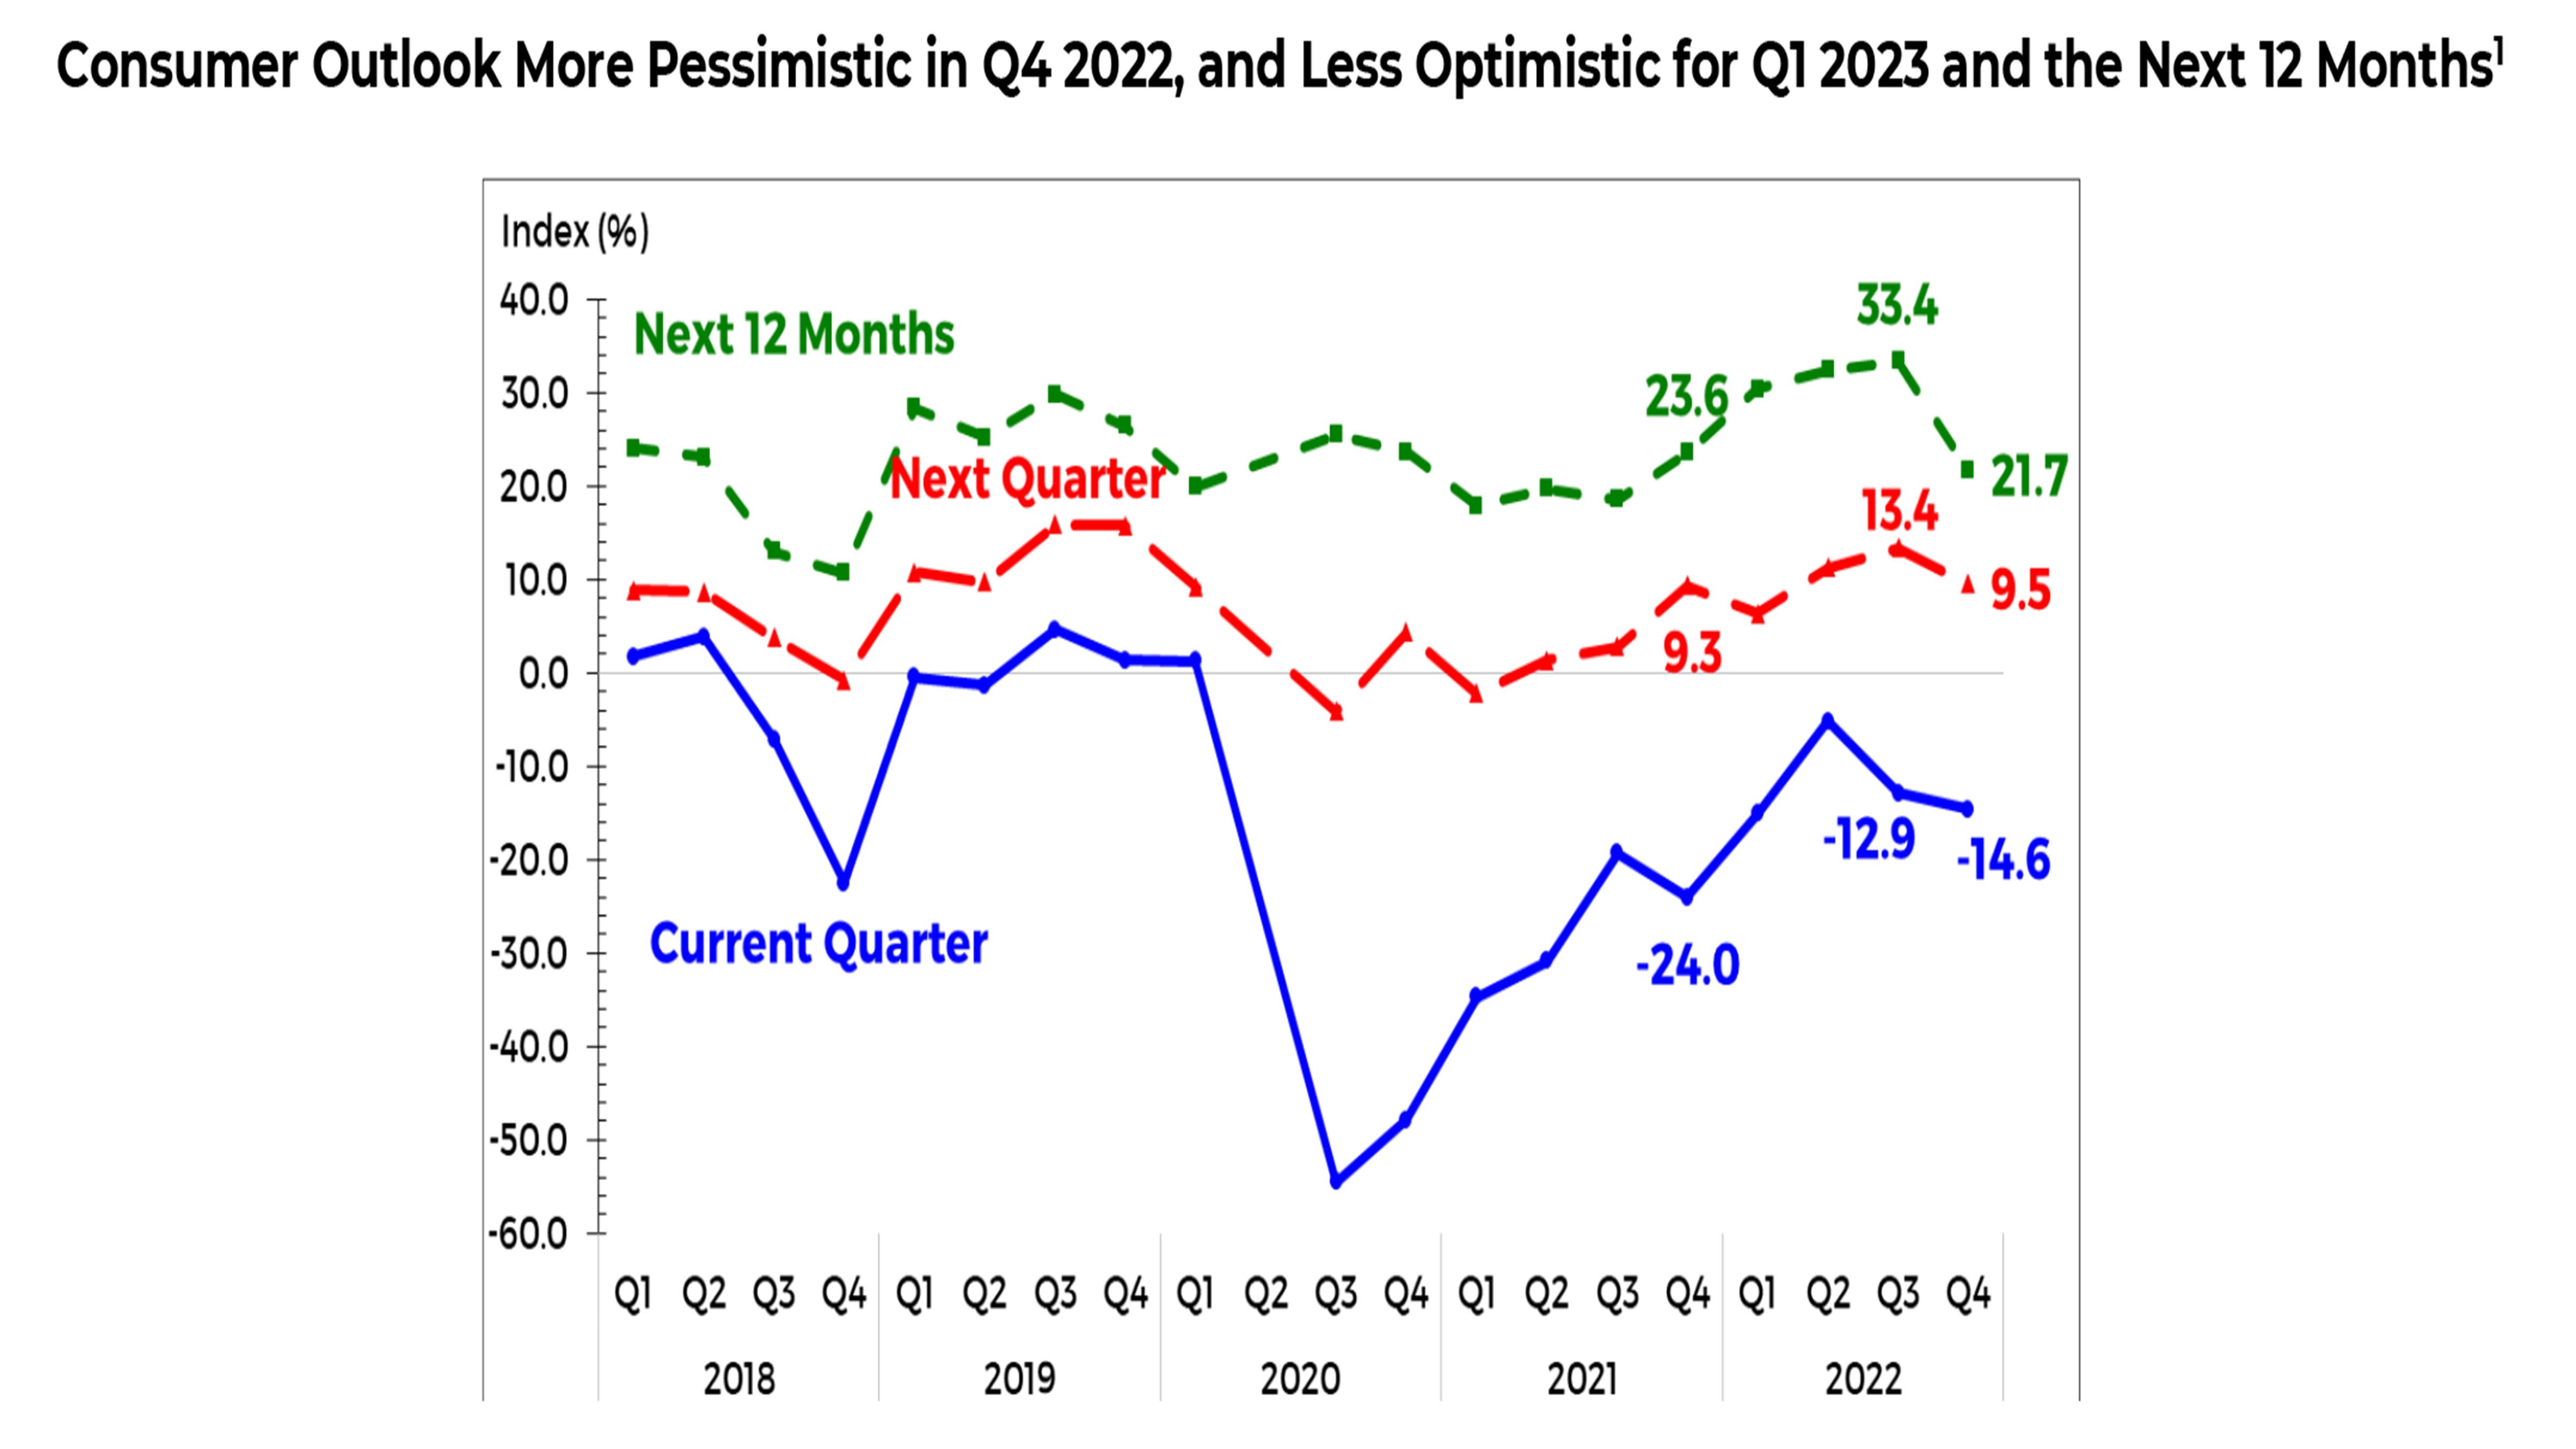 Consumers more pessimistic in Q4 2022 and Q1 2023